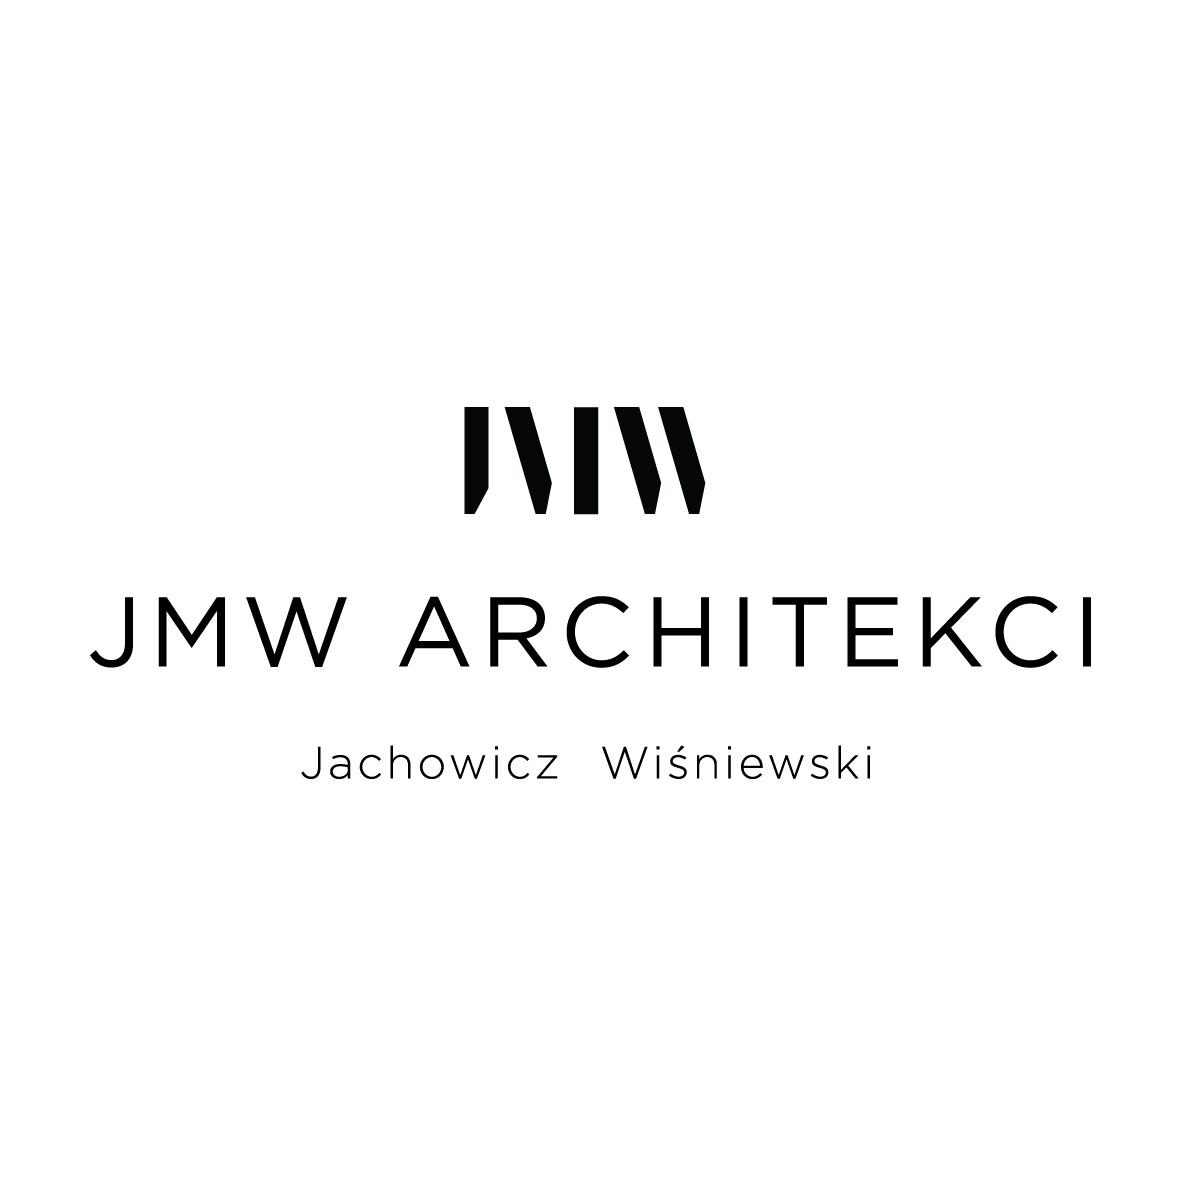 JMW ARCHITEKCI